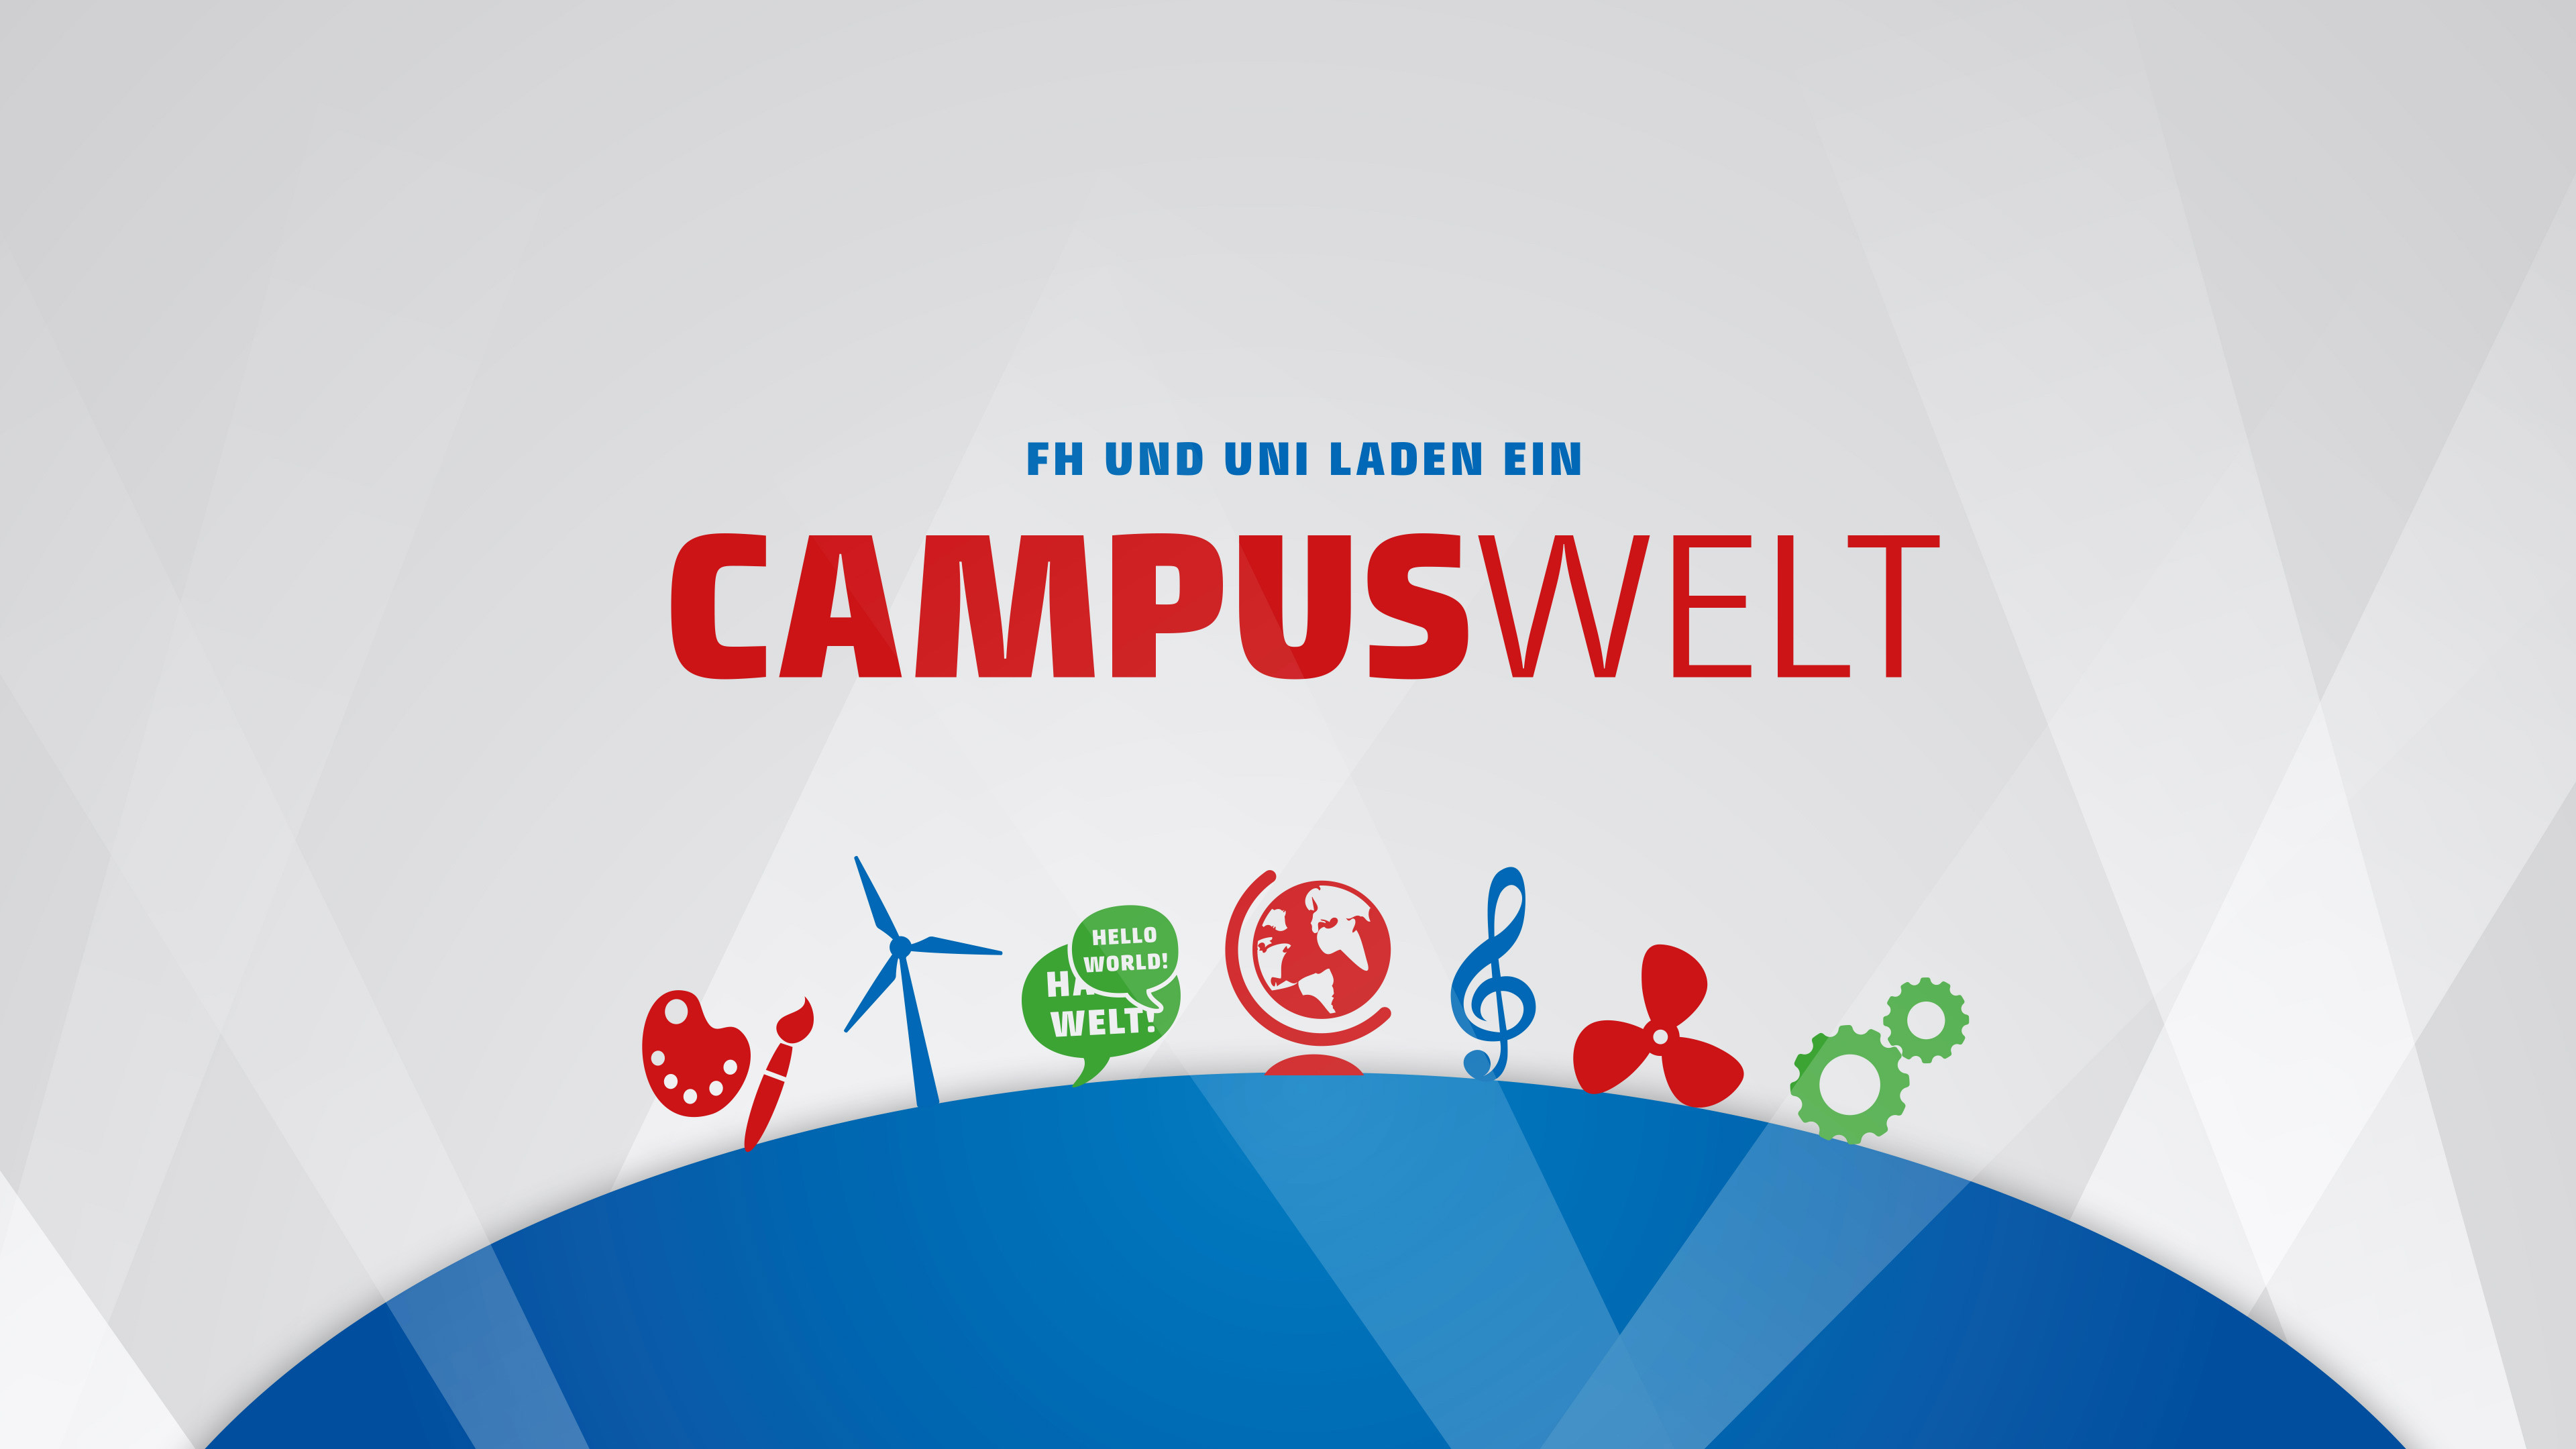 Text "FH und Campus laden ein: Campuswelt" mit blauer Grafik und Grafiken: Windrad, Zahnrad, Musiknote, Turbine, Globus, Pinsel in rot, blau und grün